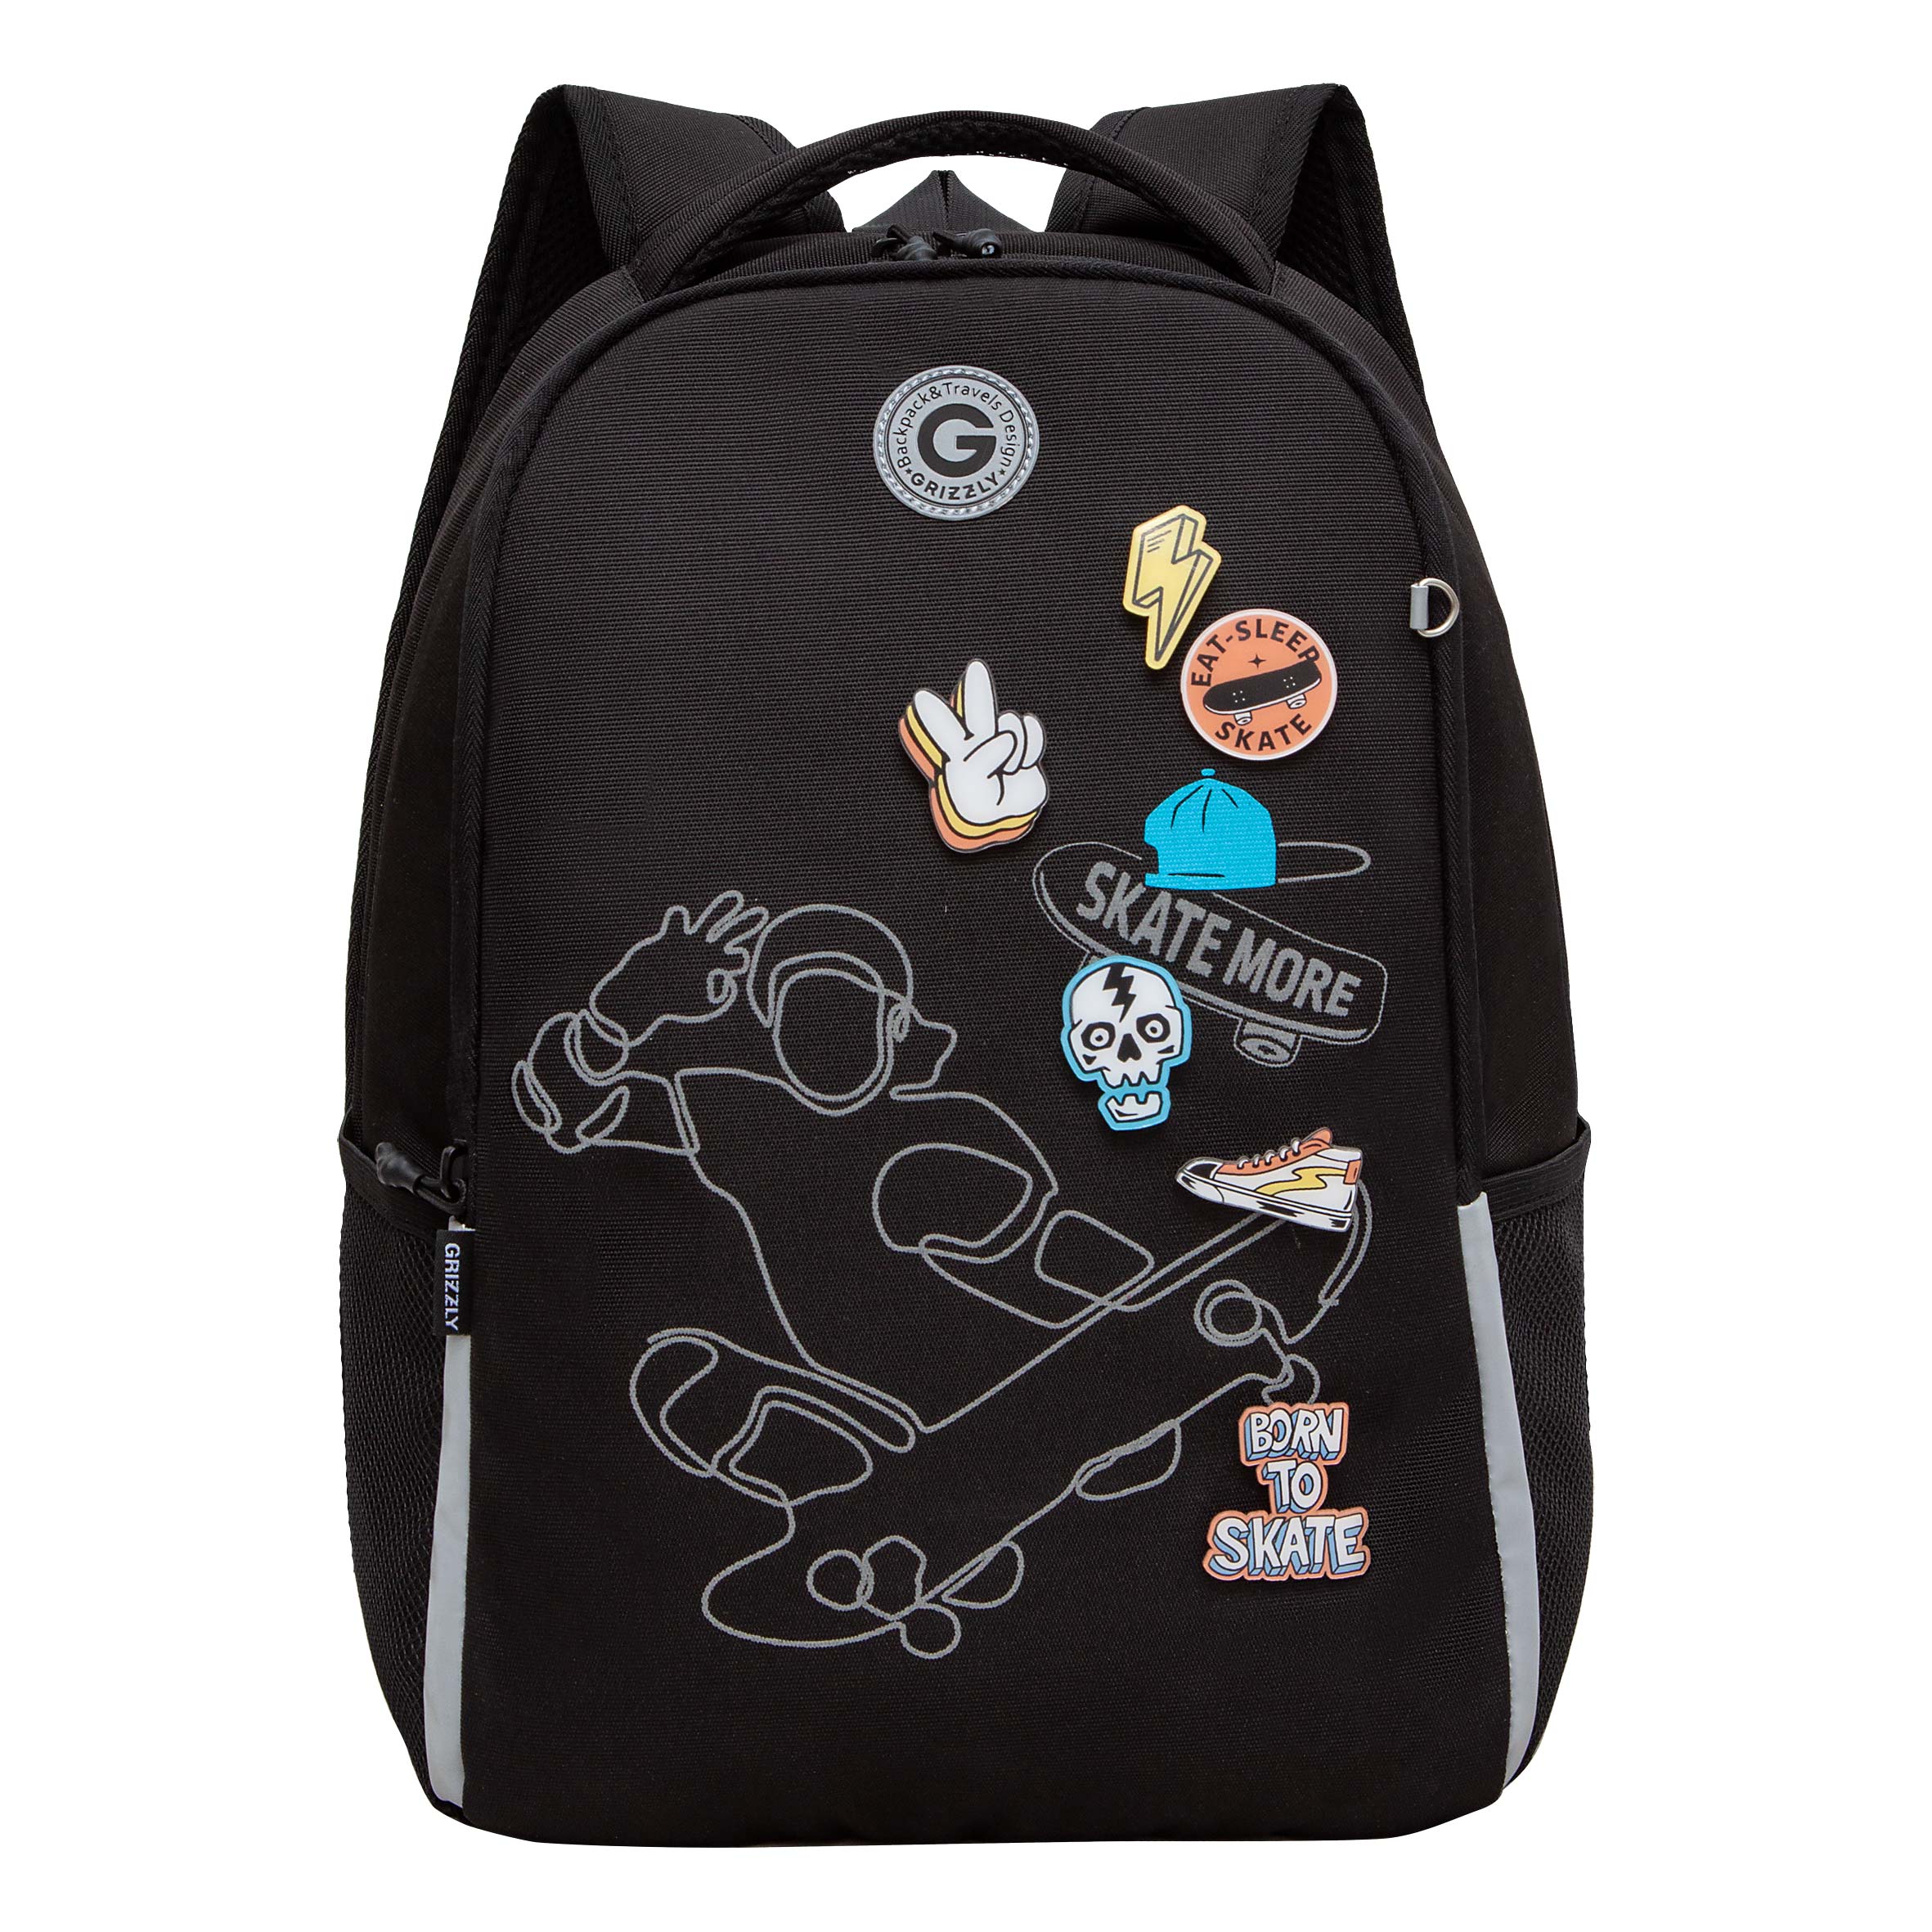 Рюкзак школьный Grizzly Легкий, жесткая спинка, 2 отделения, черный рюкзак школьный grizzly легкий с жесткой спинкой 2 отделения rb 451 3 1